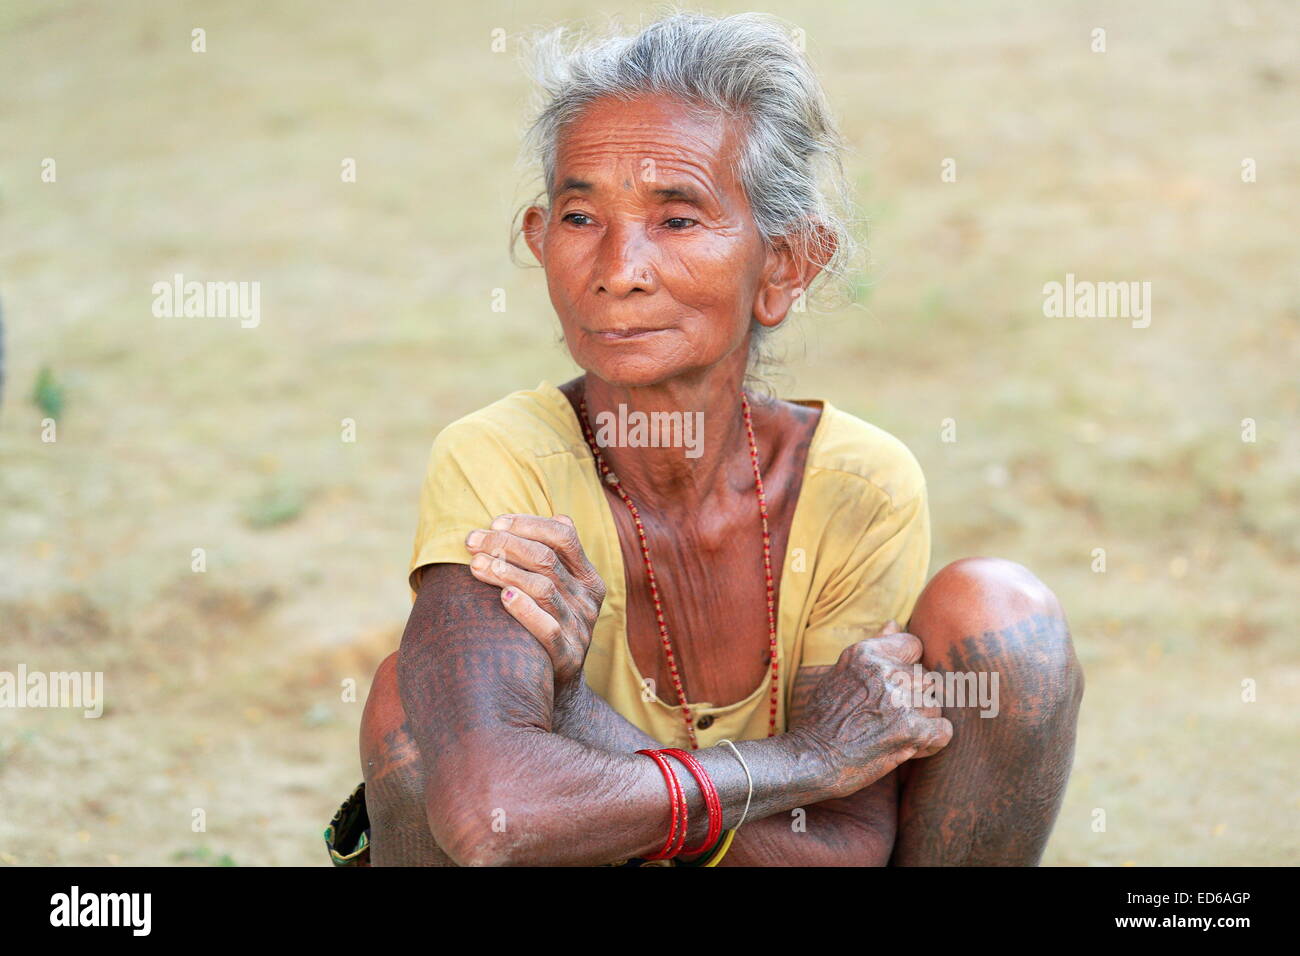 Patihani Nepal 13 Oktober Exponate Alte Frau Der Tharu Menschen Ihre Ethnischen Traditionellen Tattoos Zu Den Touristen Vorbei Stockfotografie Alamy